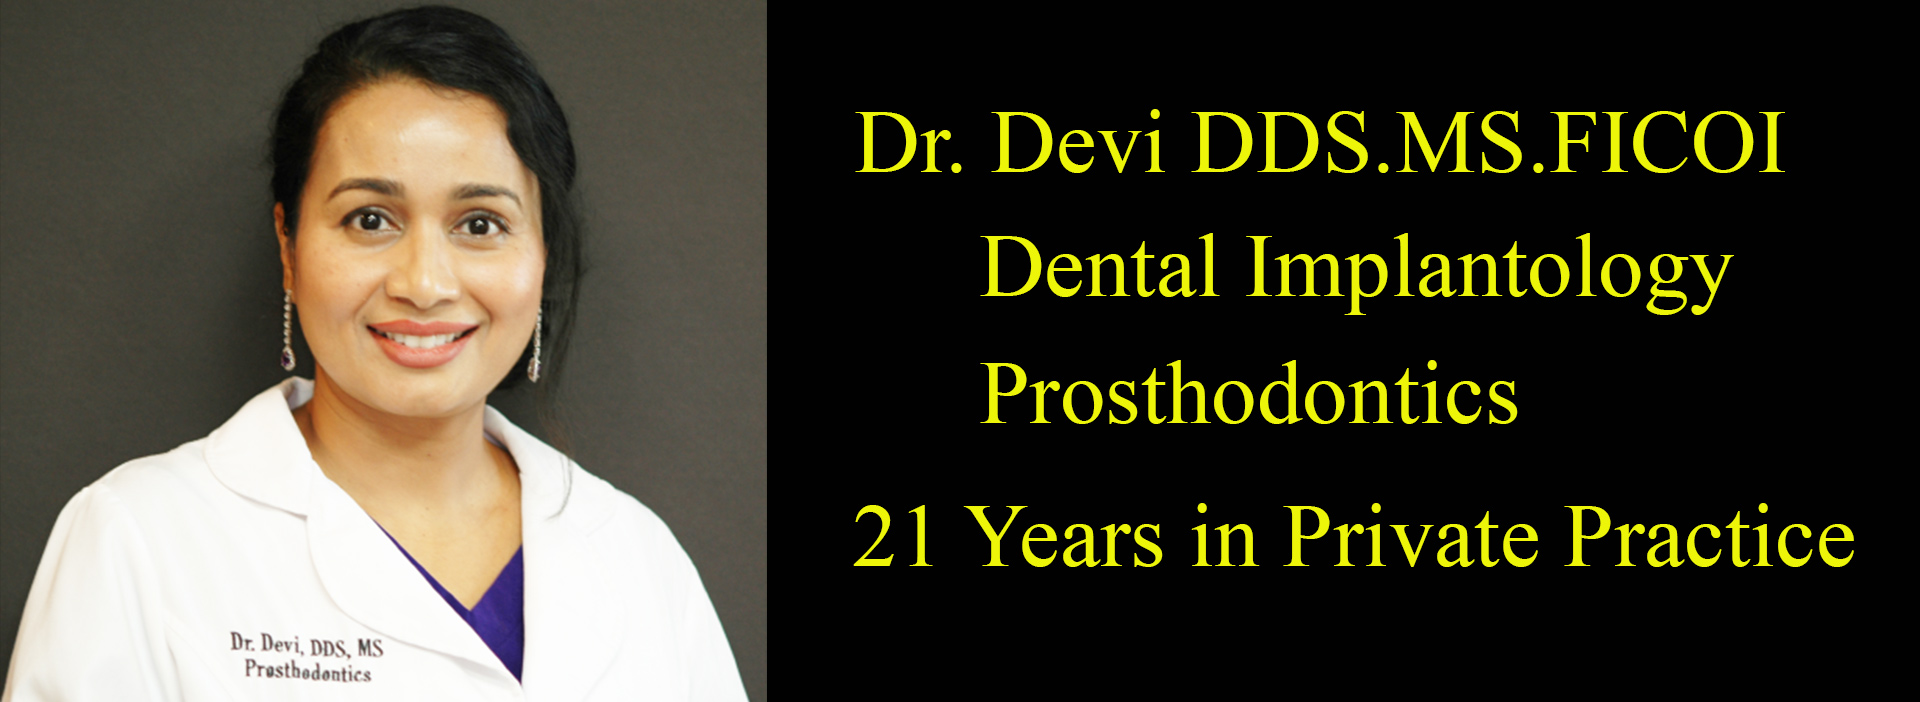 Dr.Devi-1st-Slide